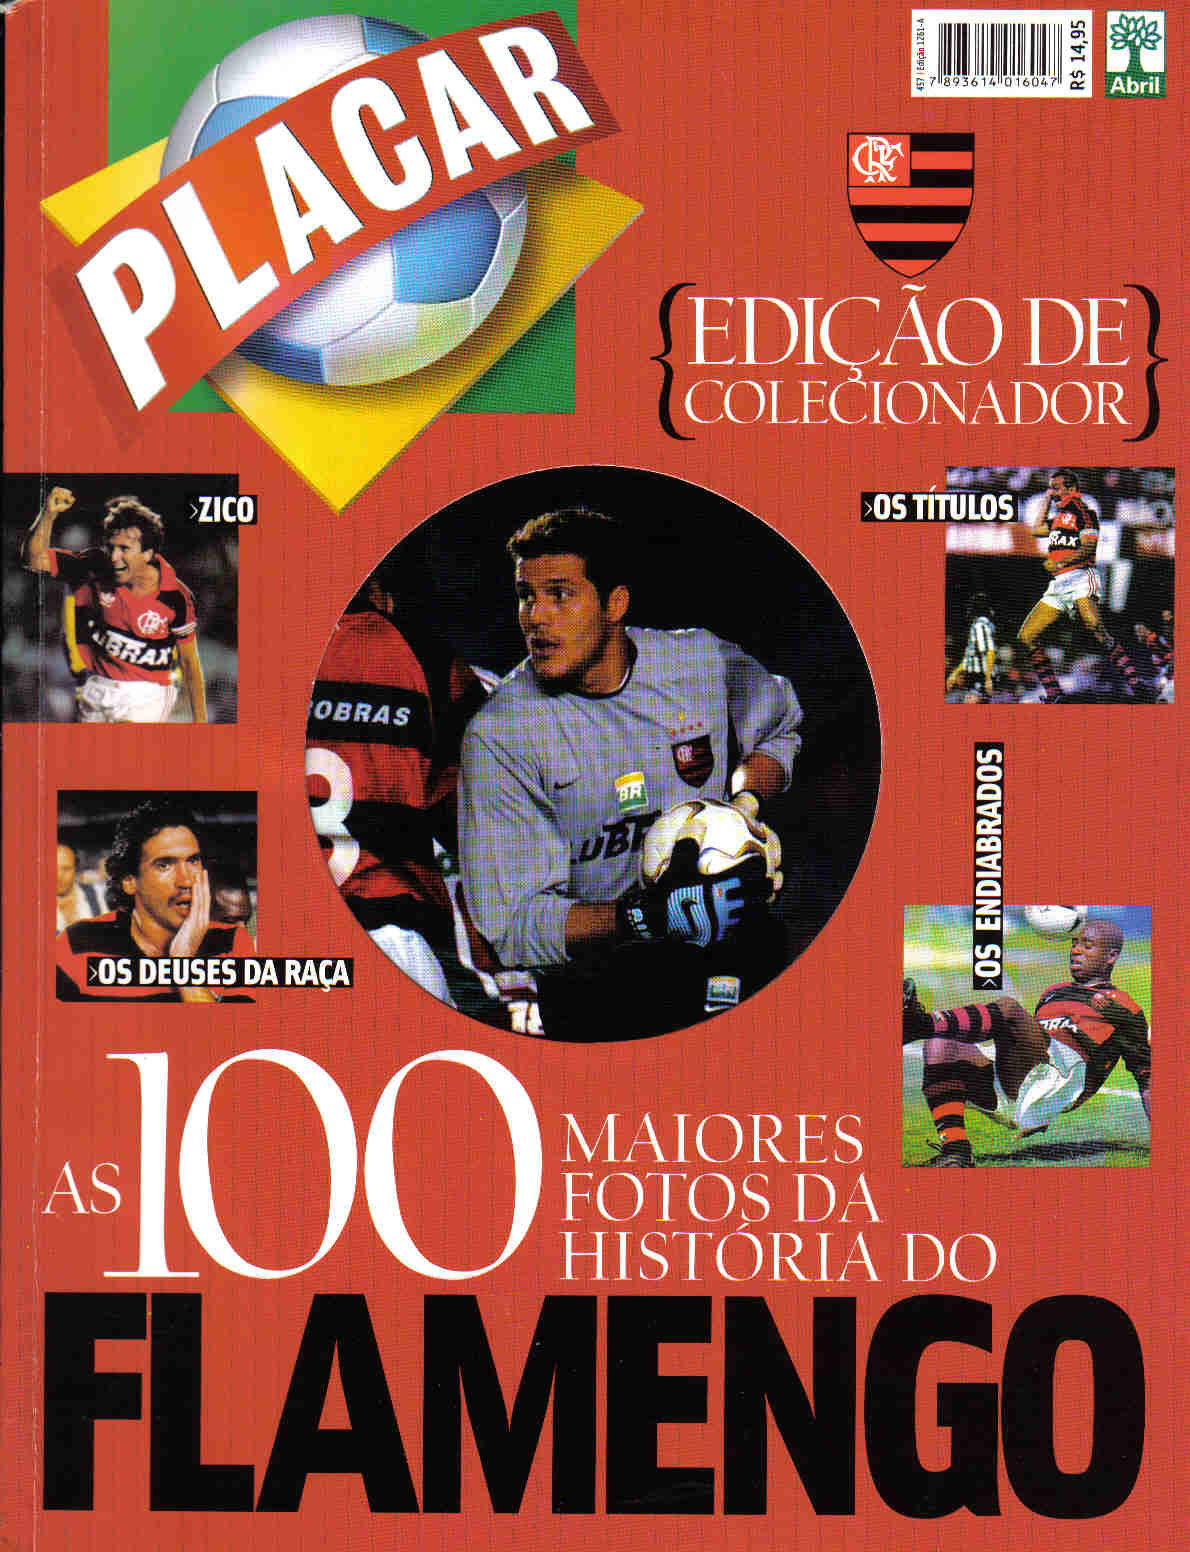 As 100 maiores fotos de PLACAR - Flamengo